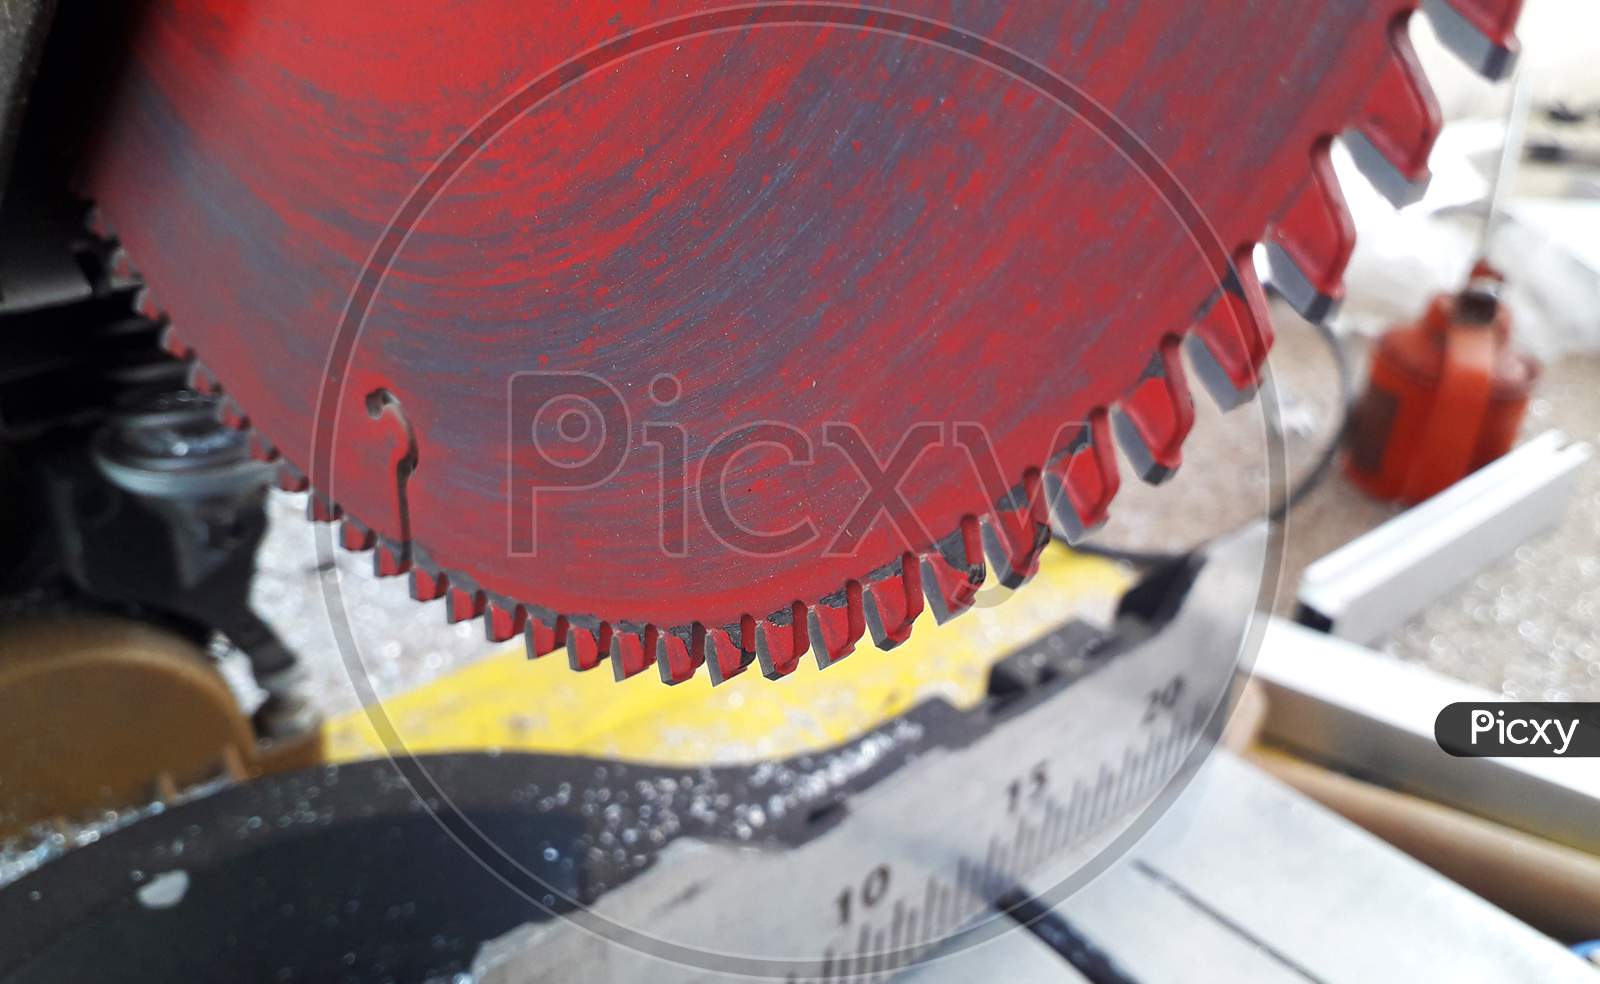 A cutting wheel or saw or blade